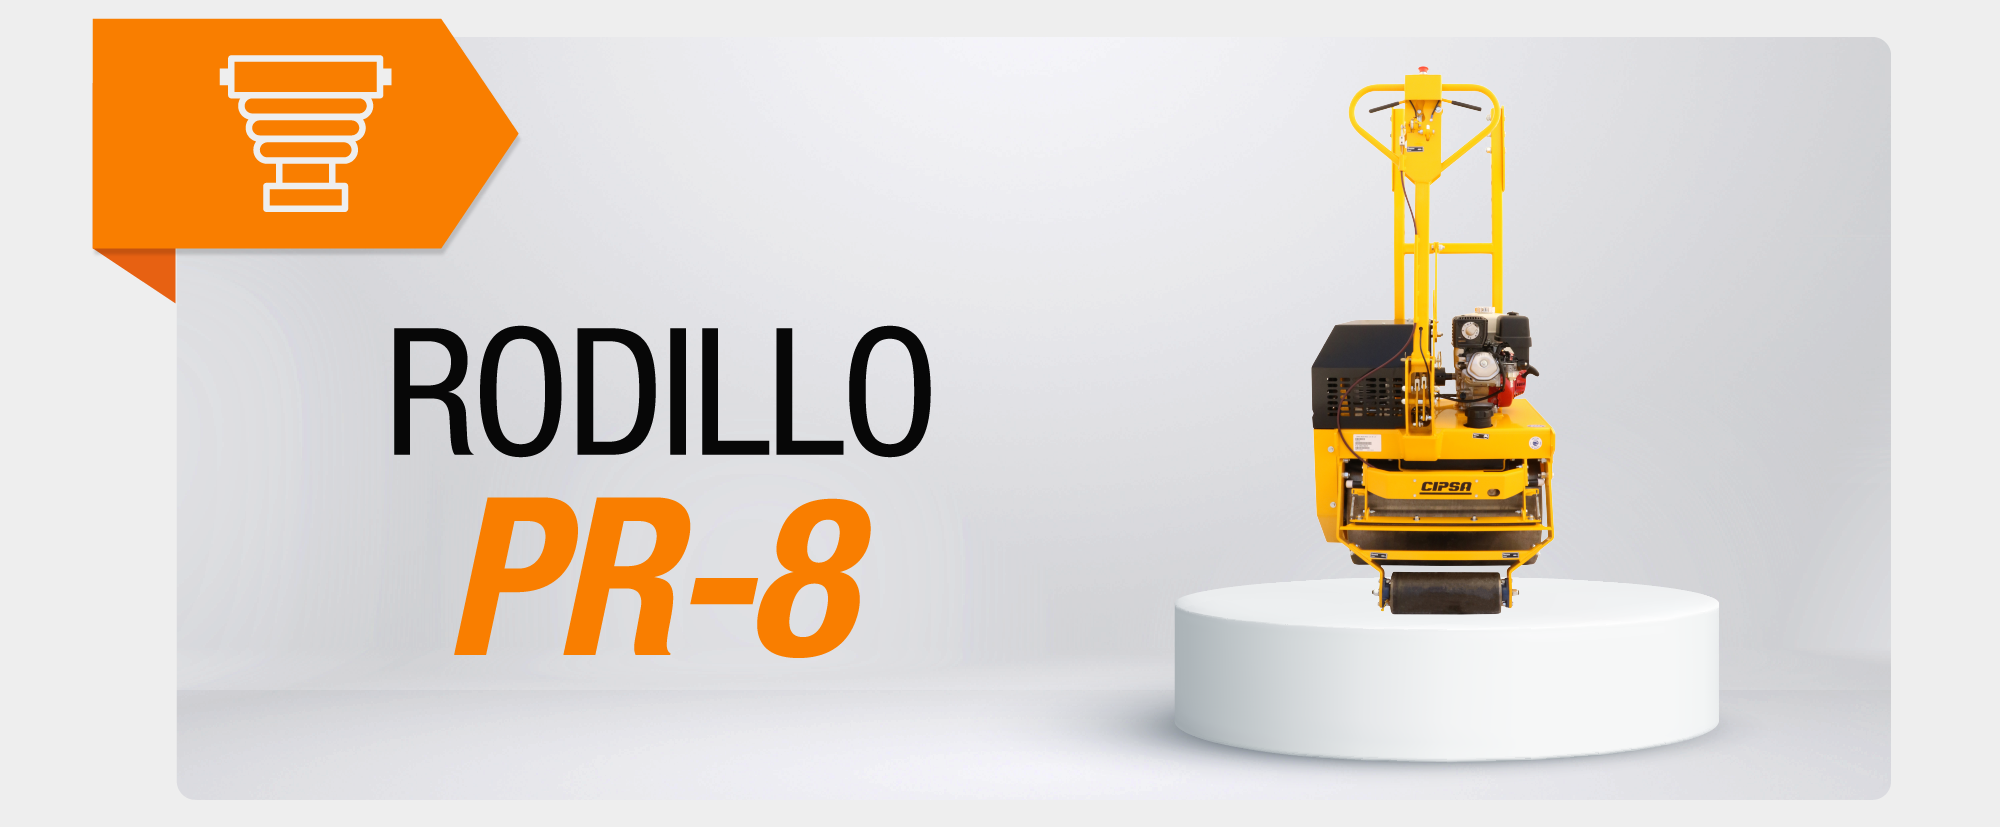 Rodillo PR-8 CMP-001